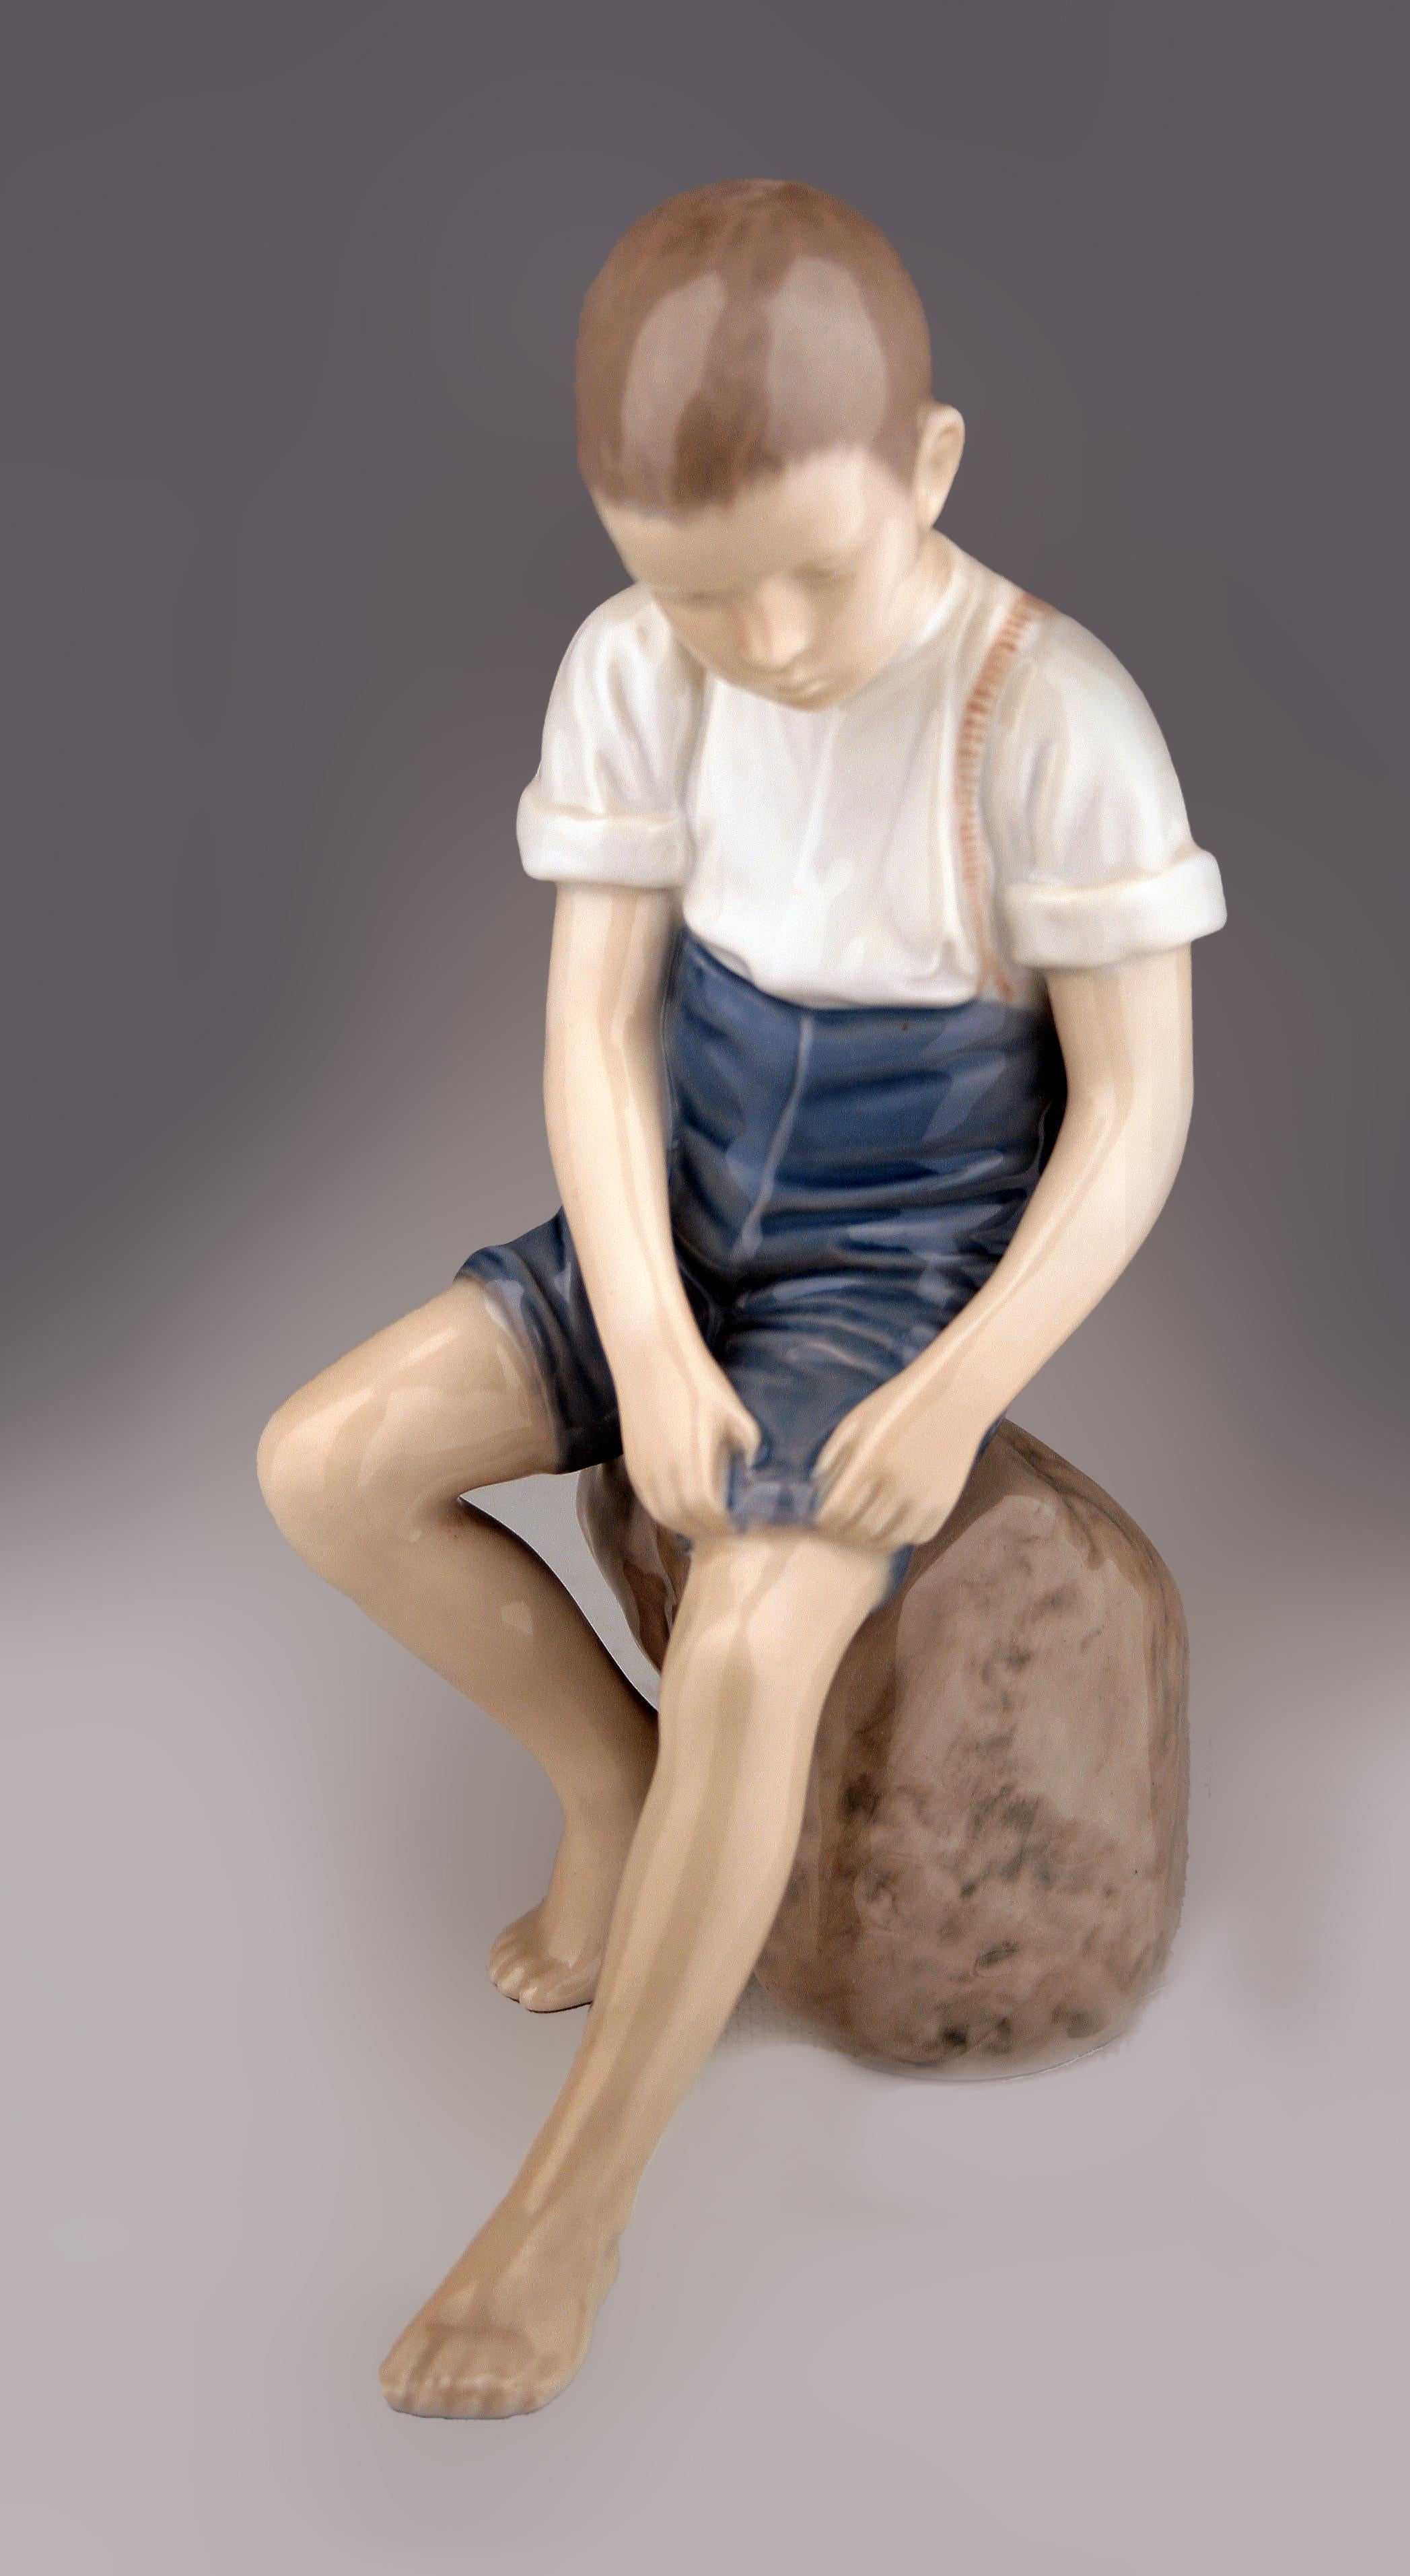 Mitte des 20. Jahrhunderts skandinavische moderne glasierte Porzellanskulptur eines auf einem Felsen sitzenden Jungen der dänischen Firma Bing & Grøndahl

von: Bing & Grøndahl
MATERIAL: Porzellan, Farbe, Keramik
Technik: gepresst, geformt,